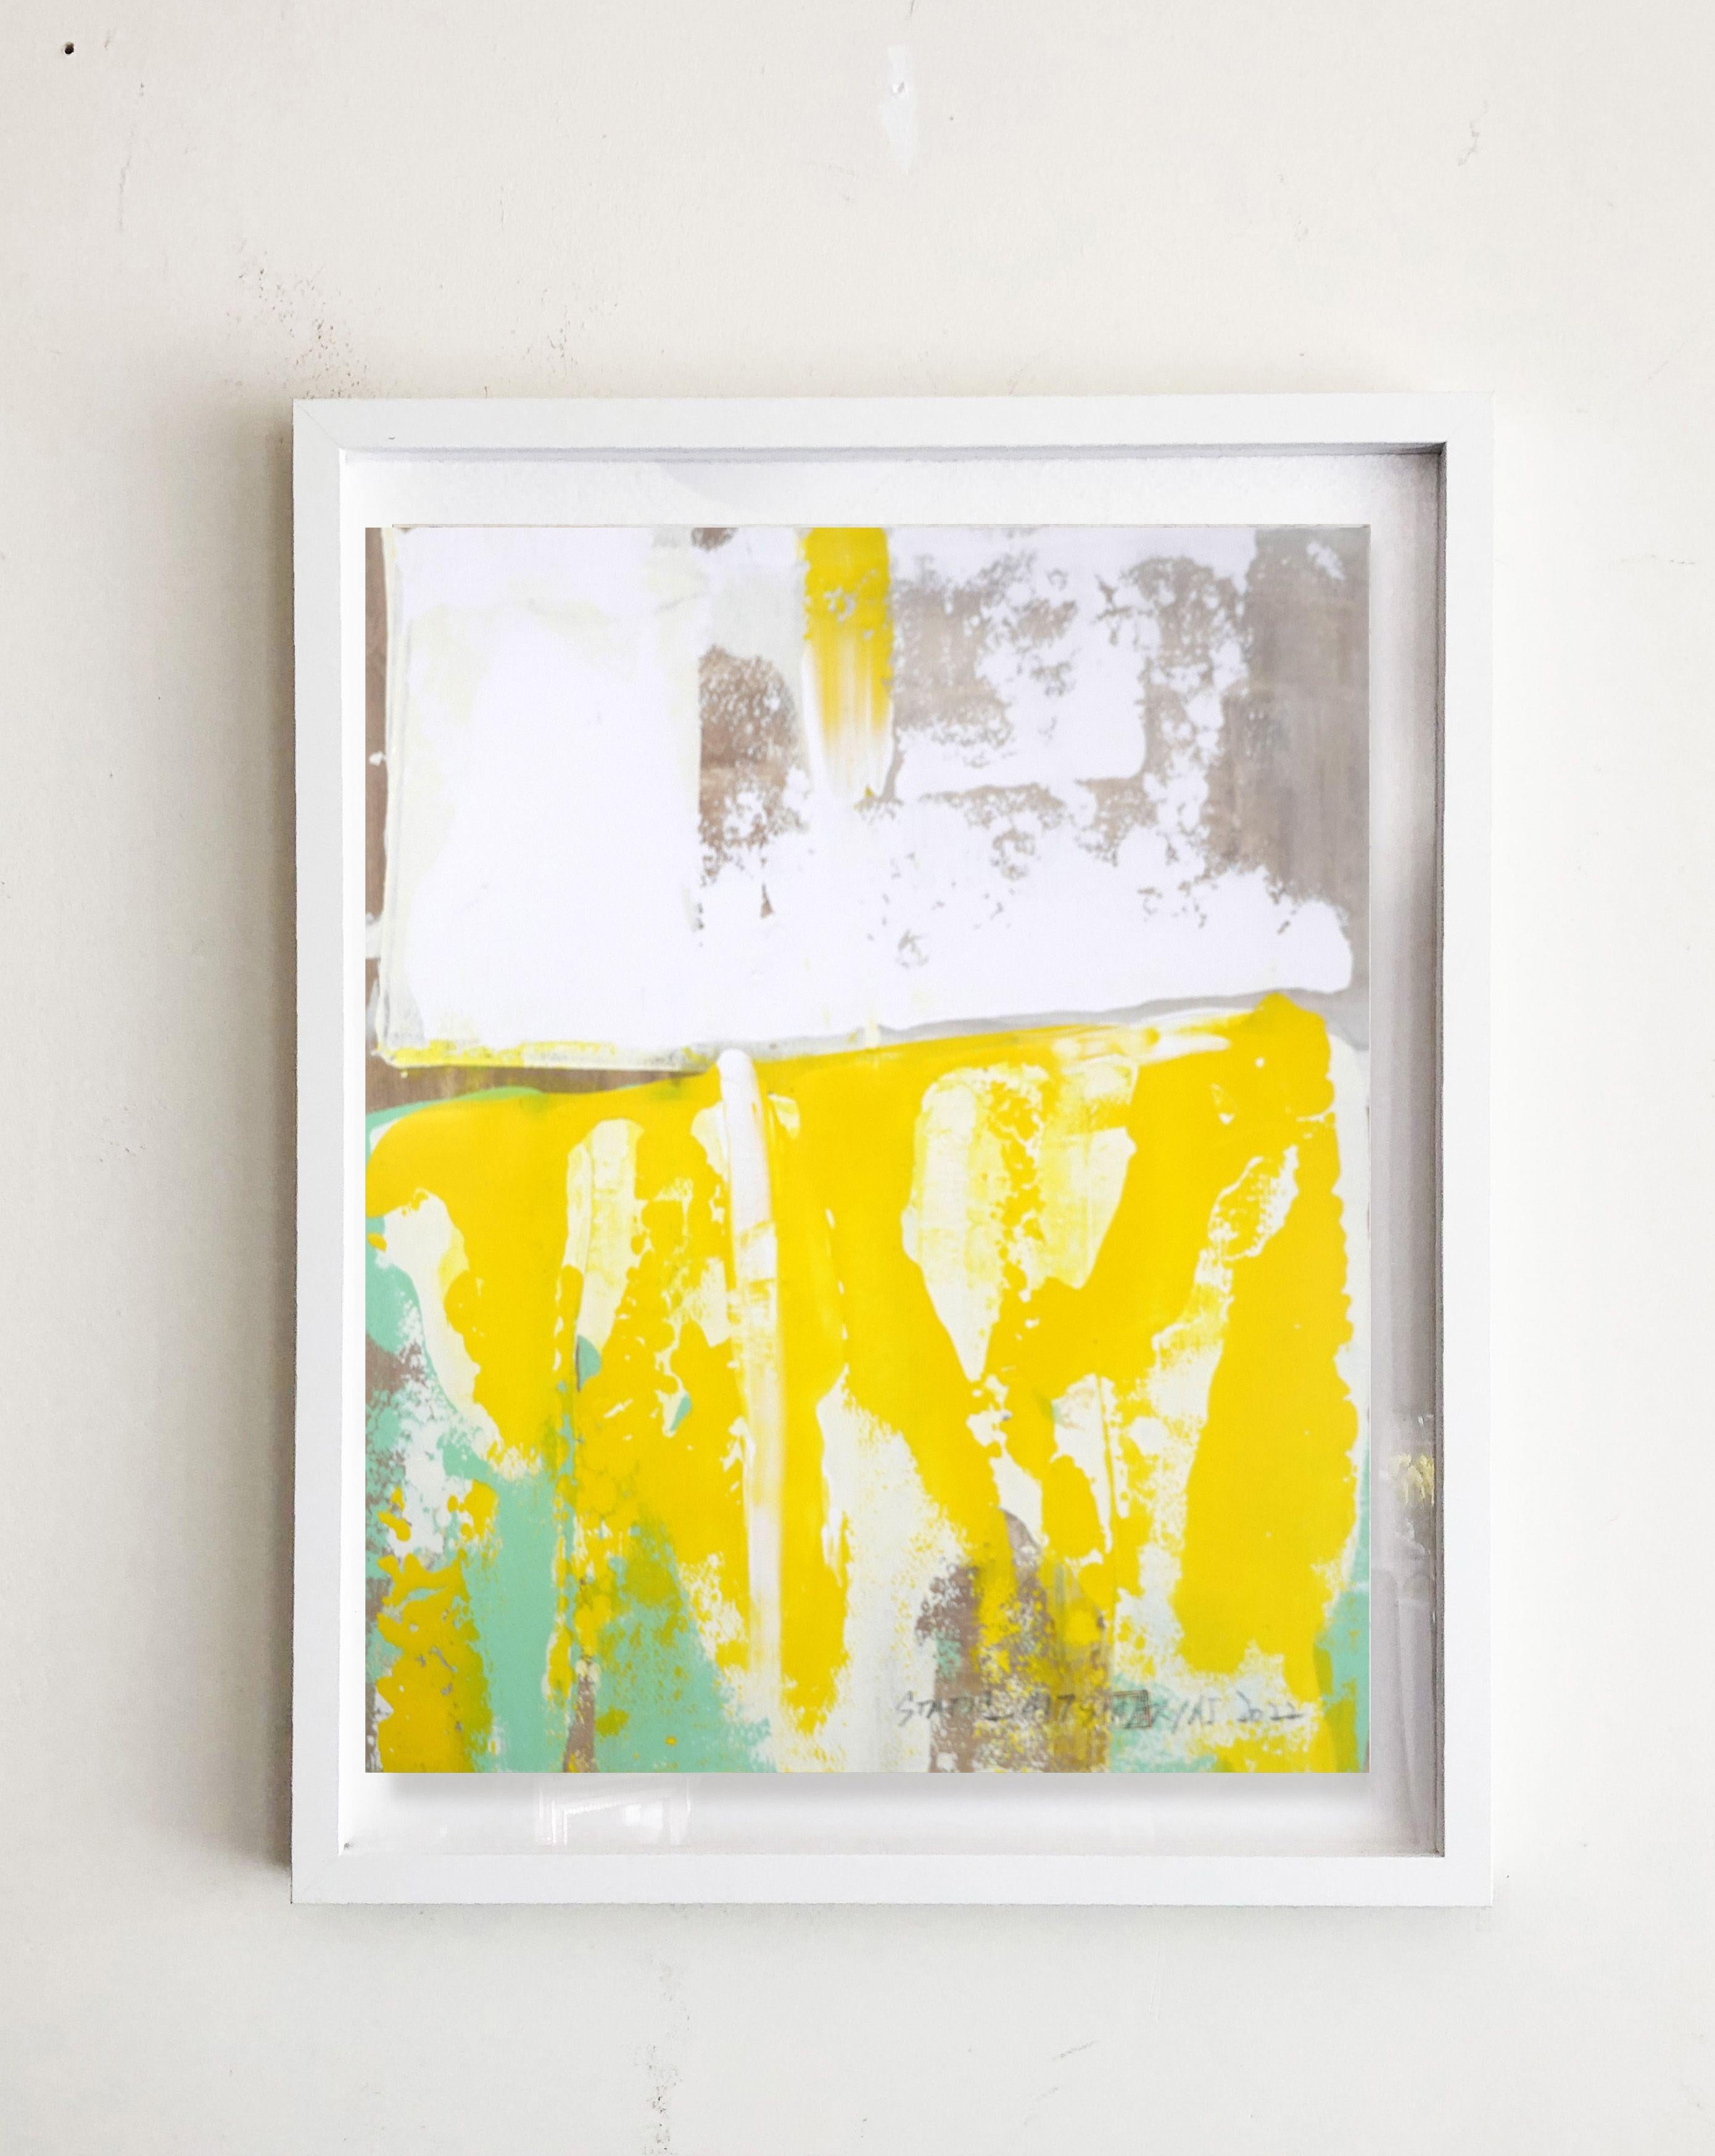 Abstraktes lebhaftes Gelb und Grün Gerahmtes Gemälde mit einem Twist  Grüntöne werden kontrastiert und ergänzt   von Gelb mit einem Twist in diesem einmaligen   abstrakte Malerei.  Das Gemälde ist 16X20â€œ